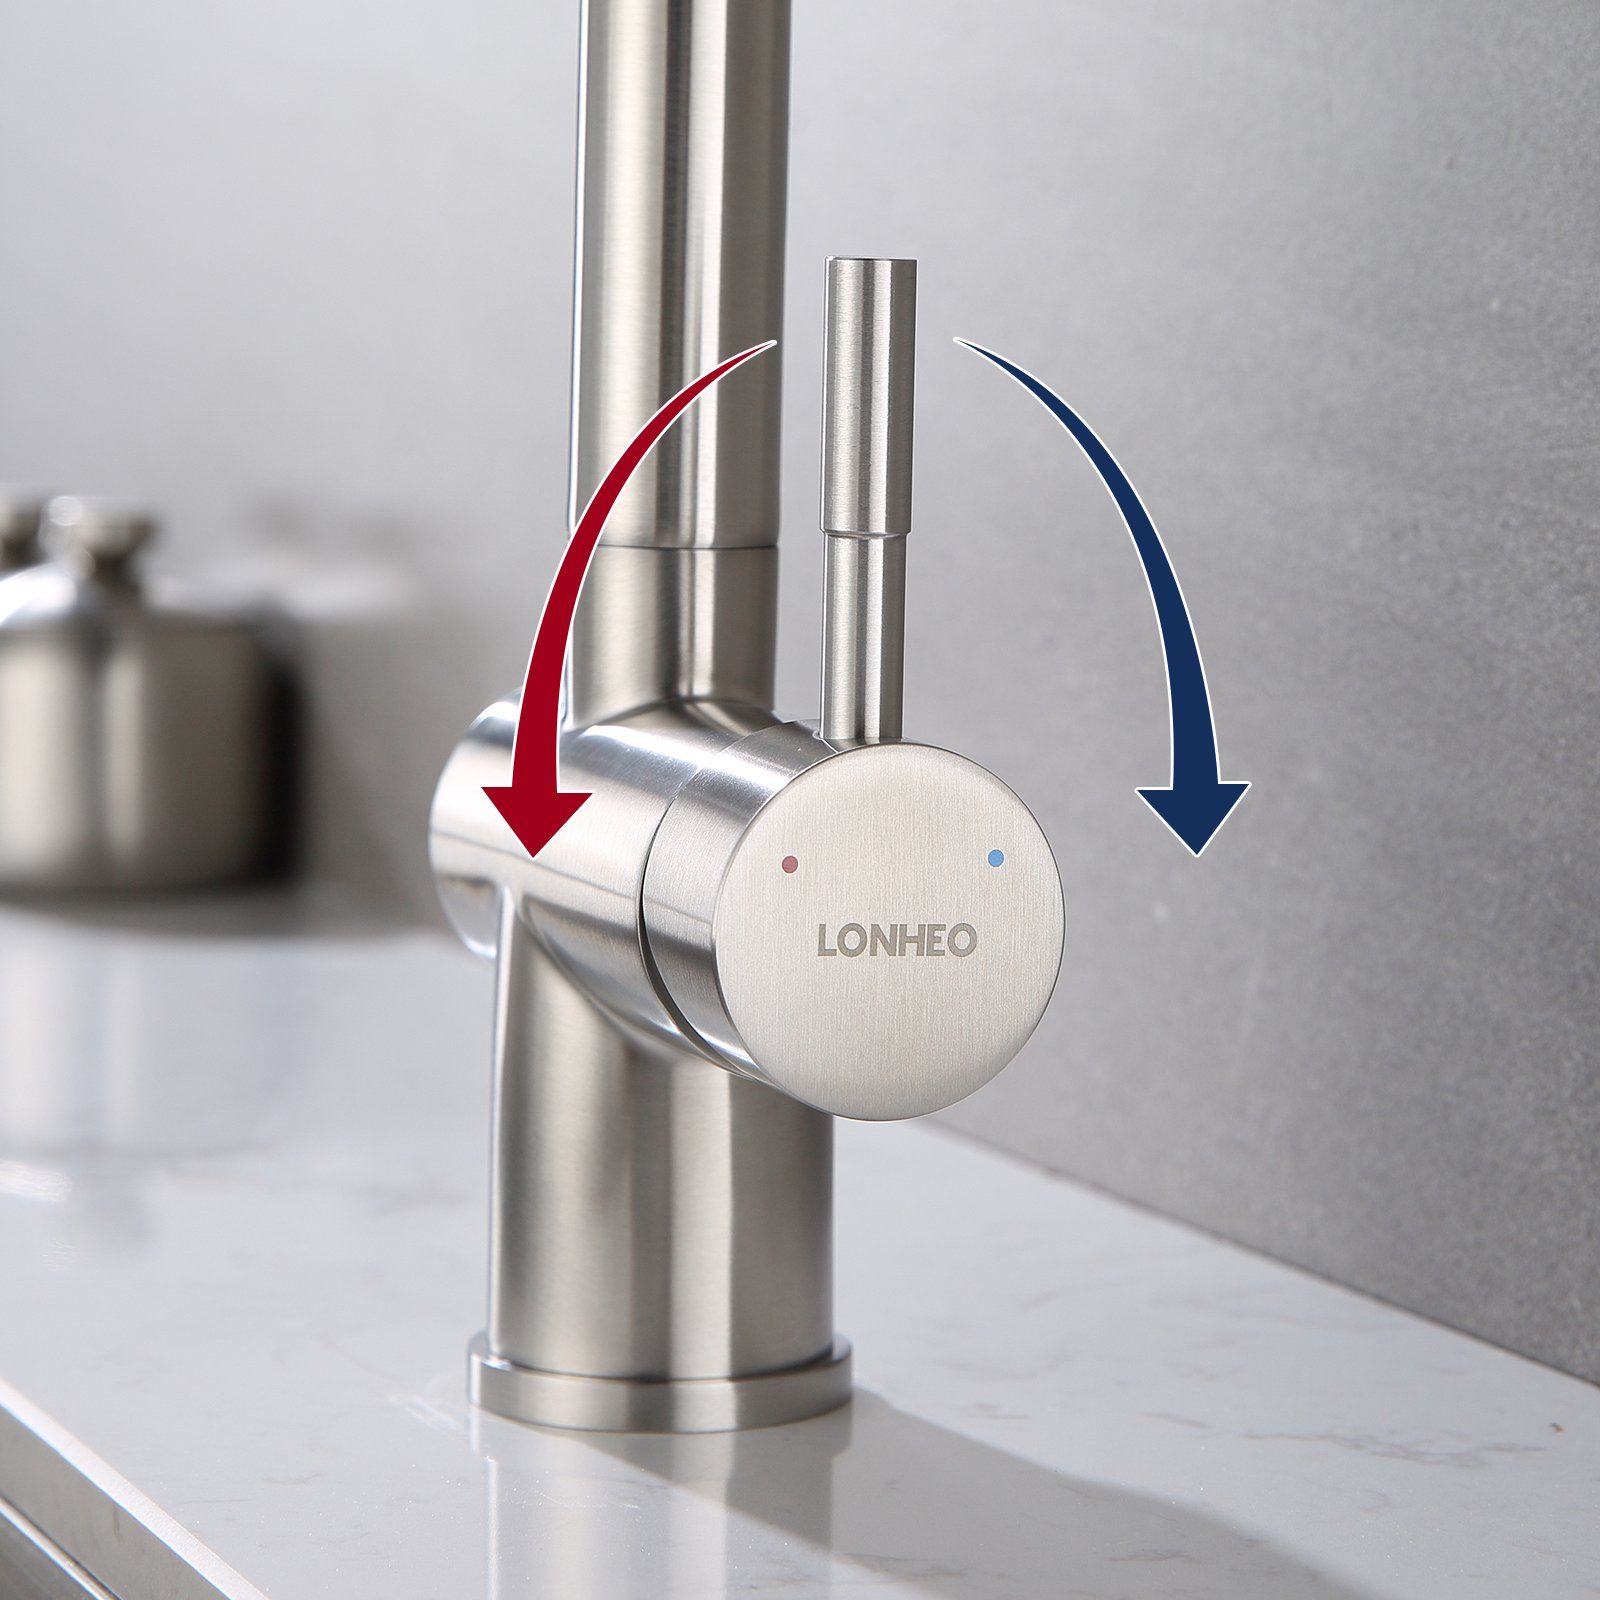 Lonheo Drehbar Wasserhahn Ausziehbar Küchenarmatur 360° Hochdruckhahn Mischbatterie Edelstahl Silber Spültischarmatur